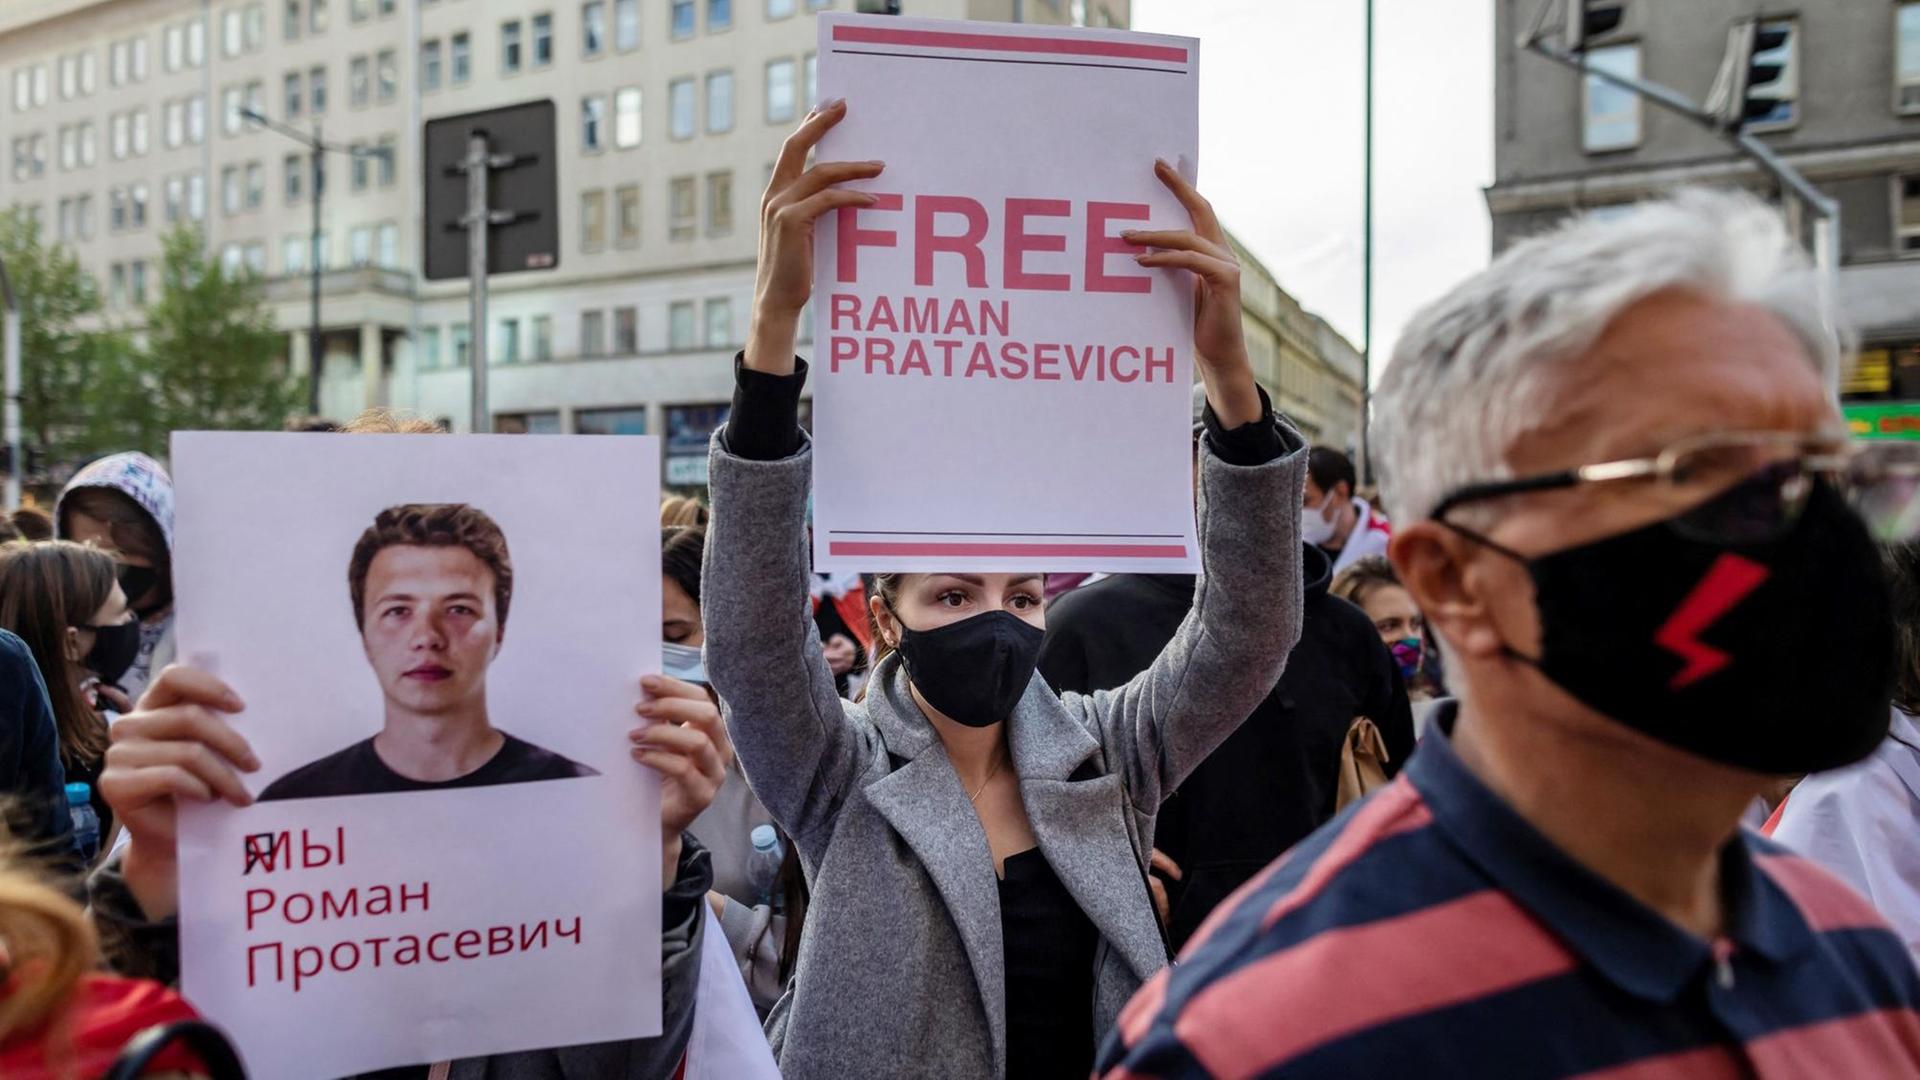 Proteste in Polen auf der Strasse. Ein Schild 'FREE Roman Protasevich' wird hochgehalten während einer Demonstration vor dem Europäischen Kommissionsbüro in Warschau, 24. Mai 2021